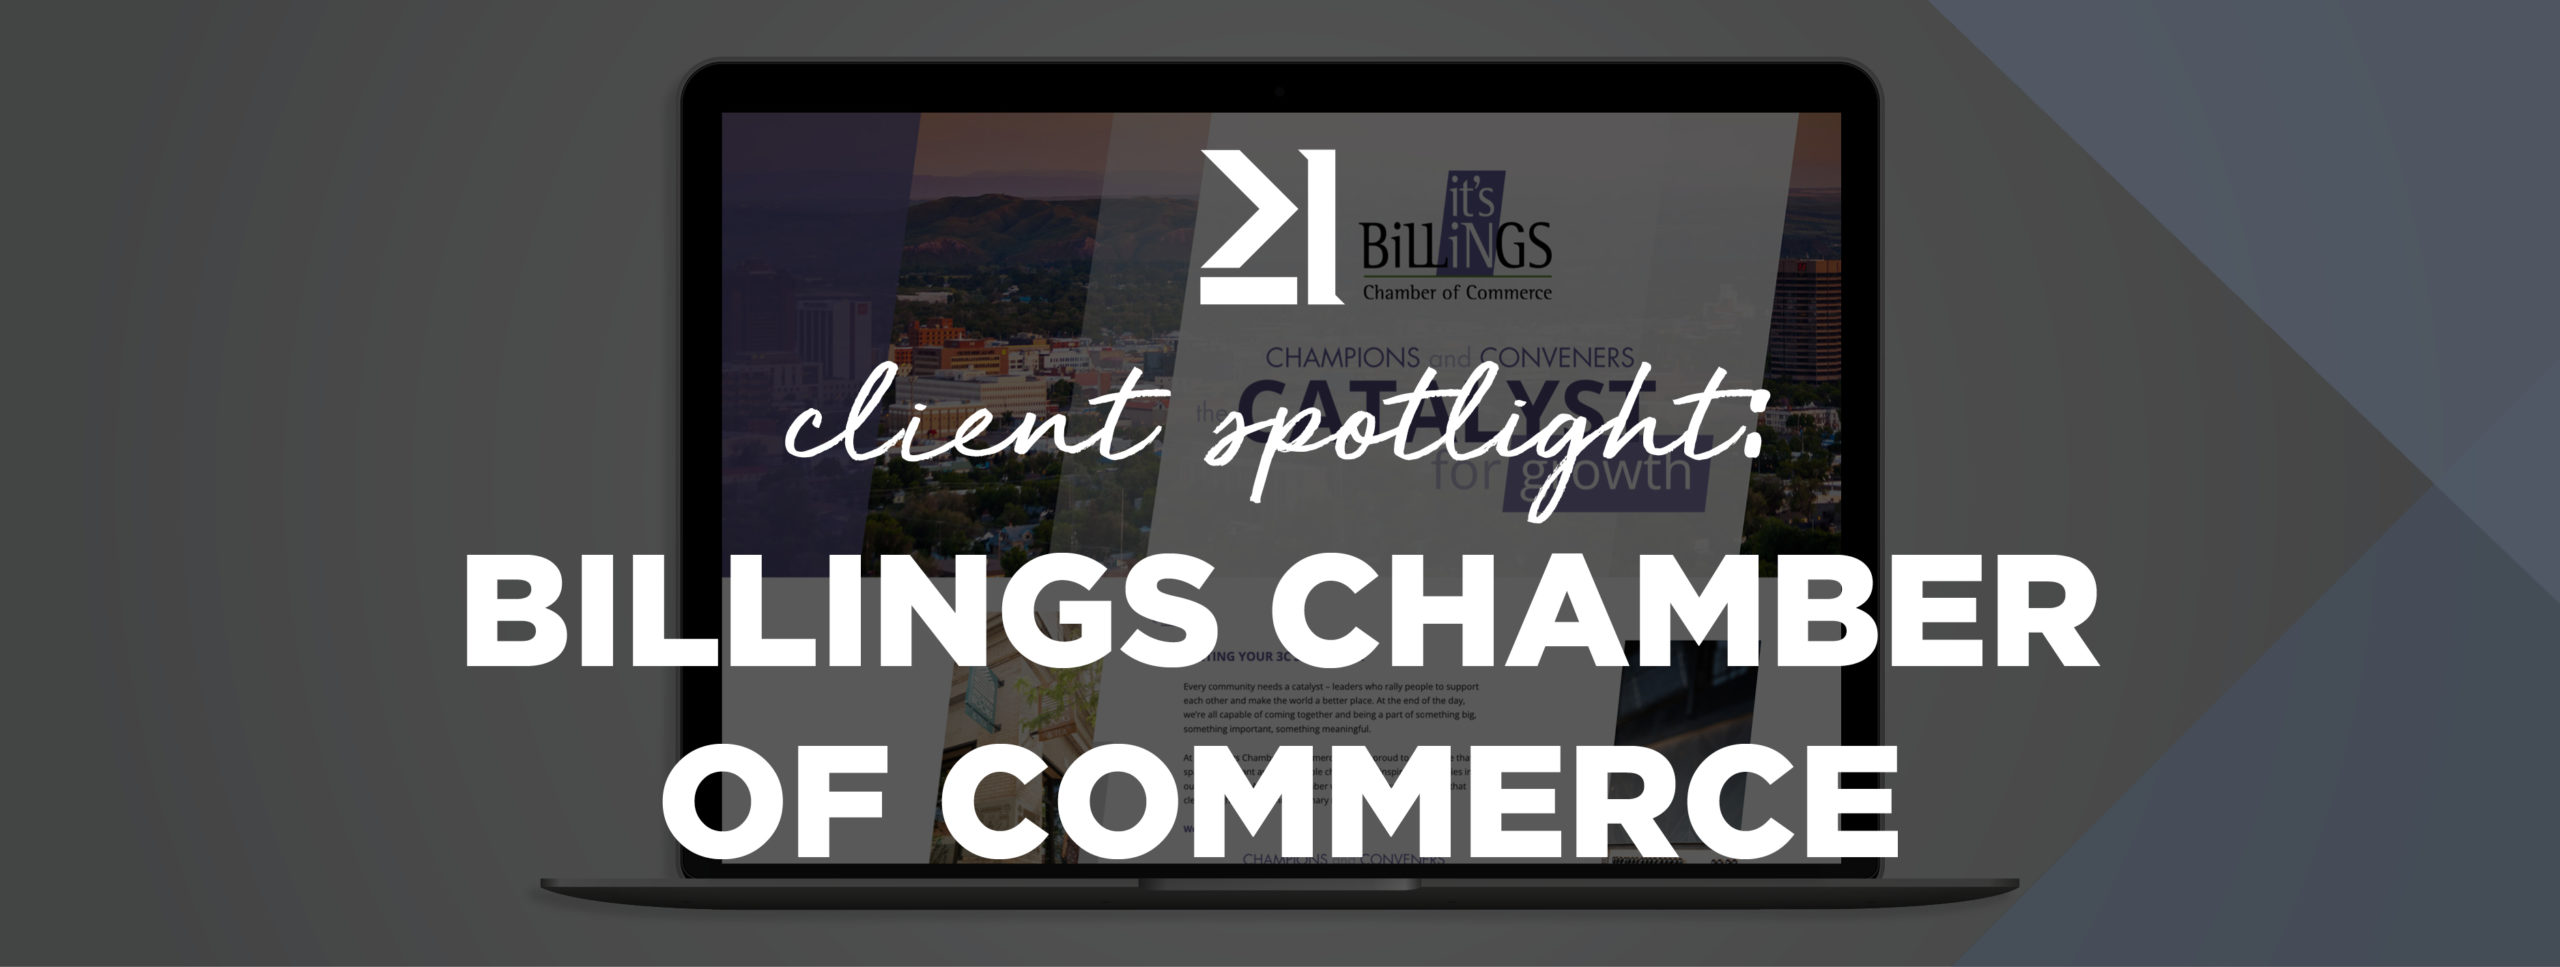 Billings Chamber of Commerce Client Spotlight